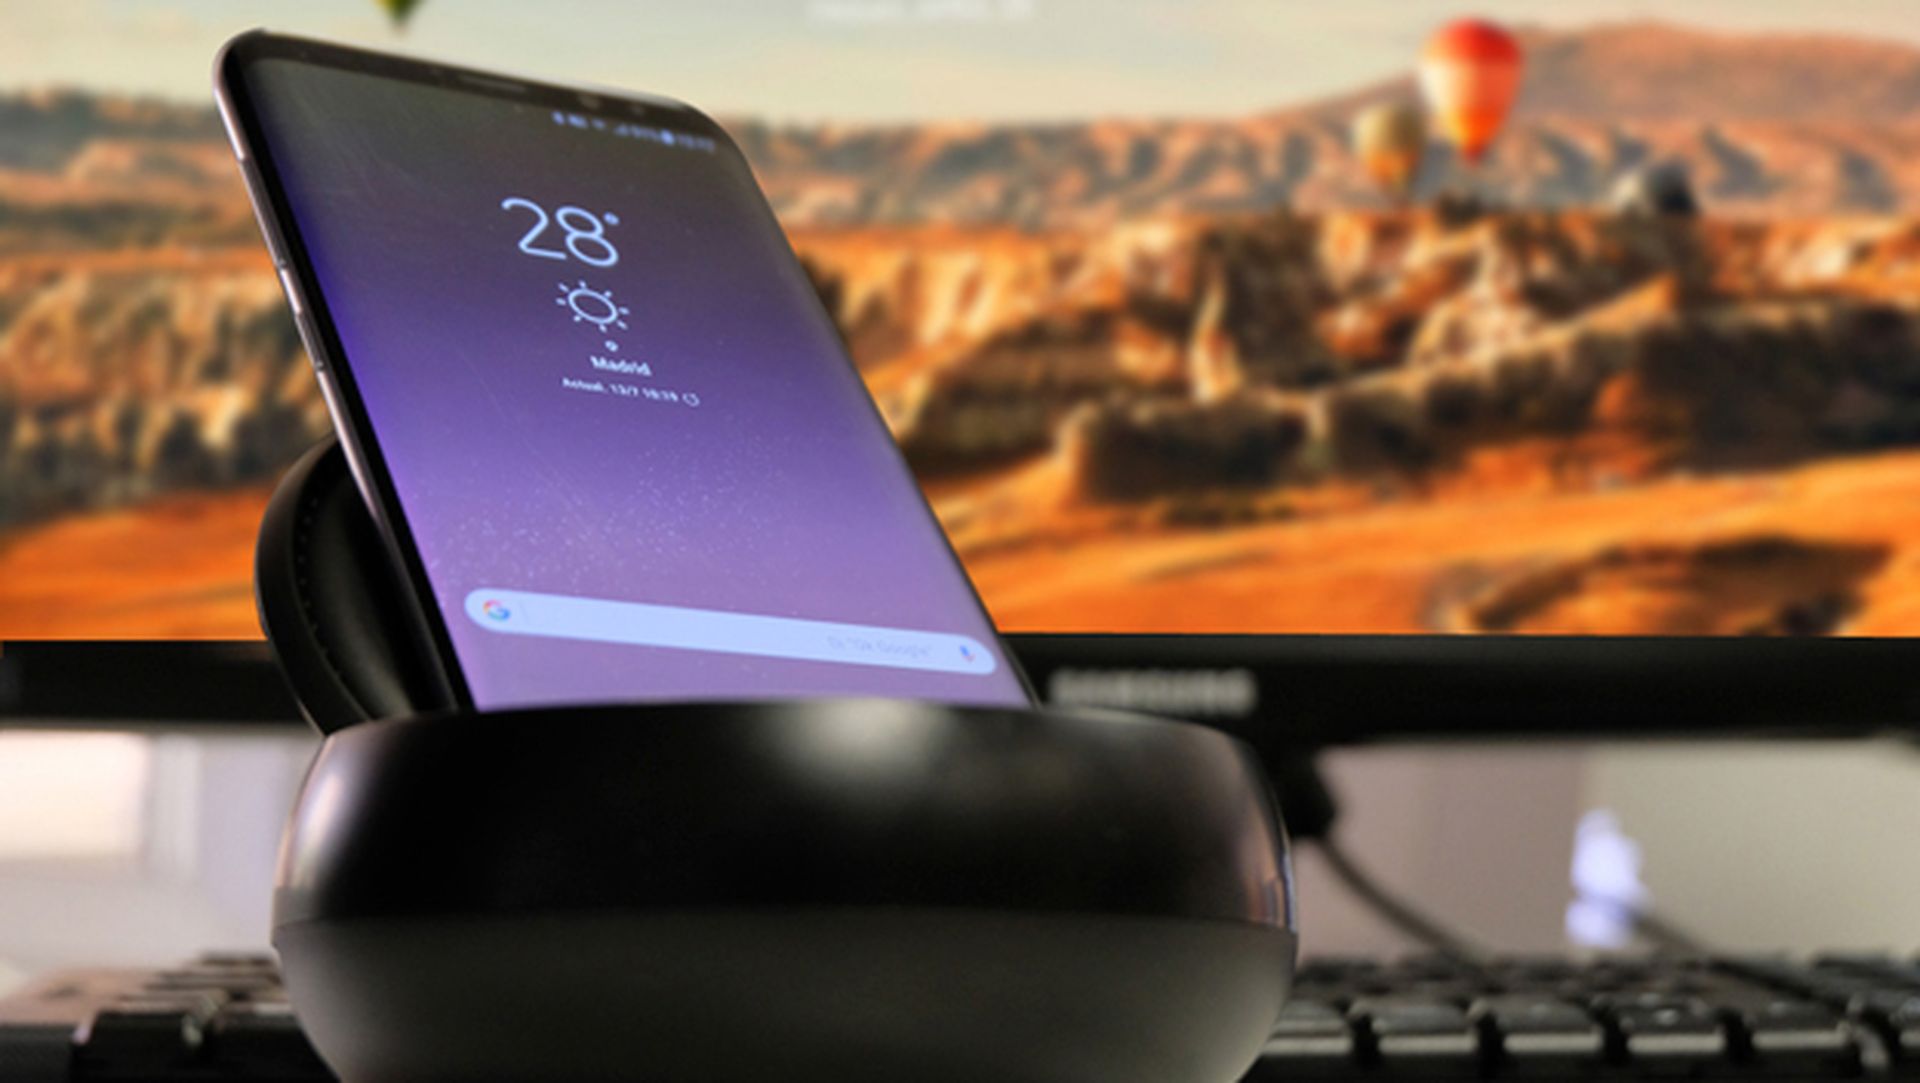 Analizamos Samsung DeX, la solución para convertir el S8 en un PC